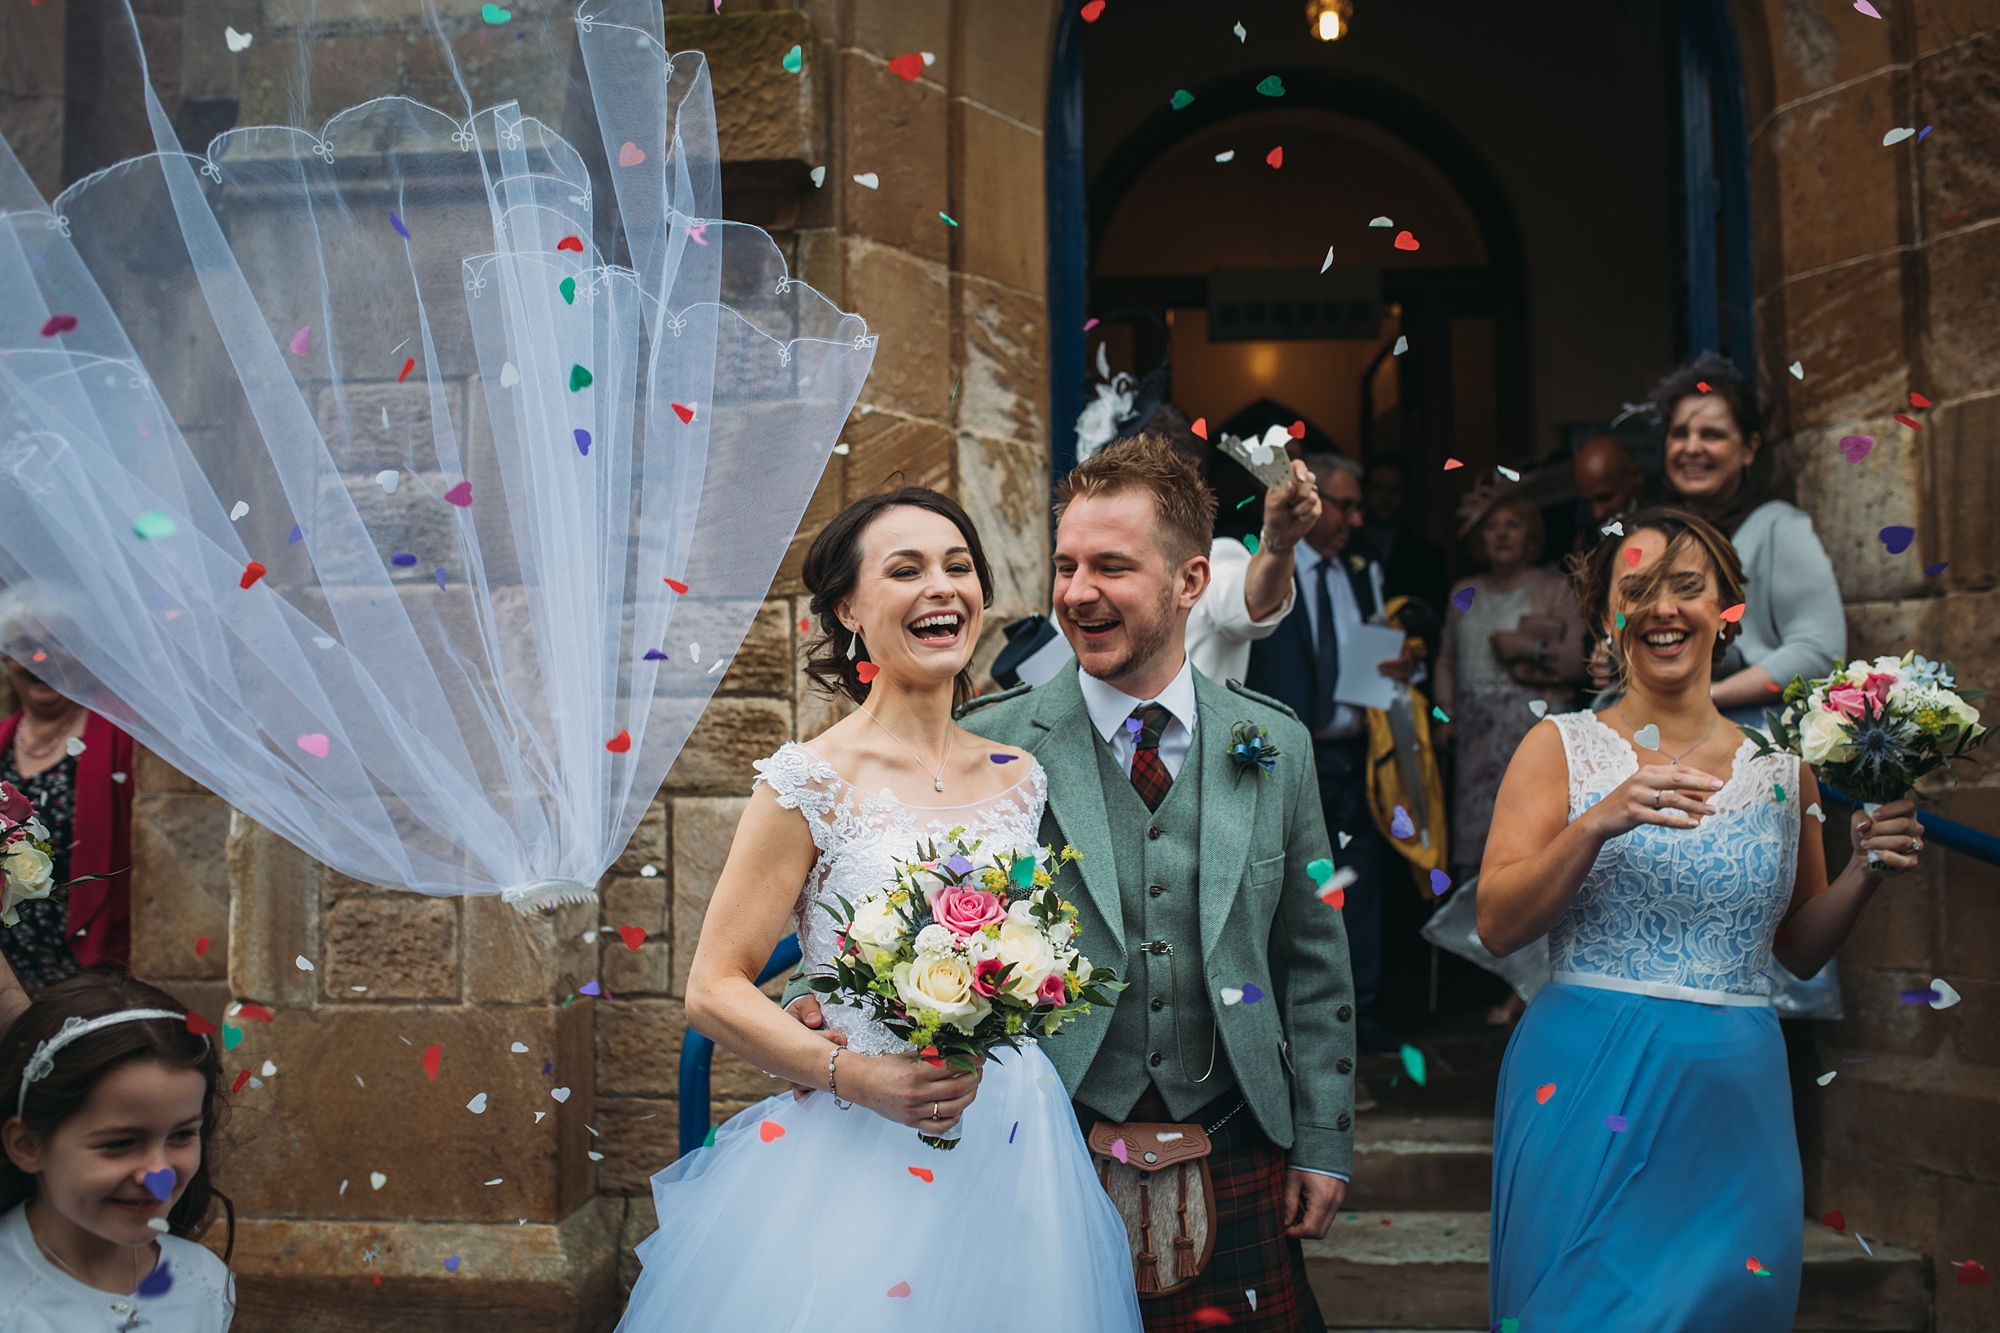 a brides veil blows away - best wedding photographs